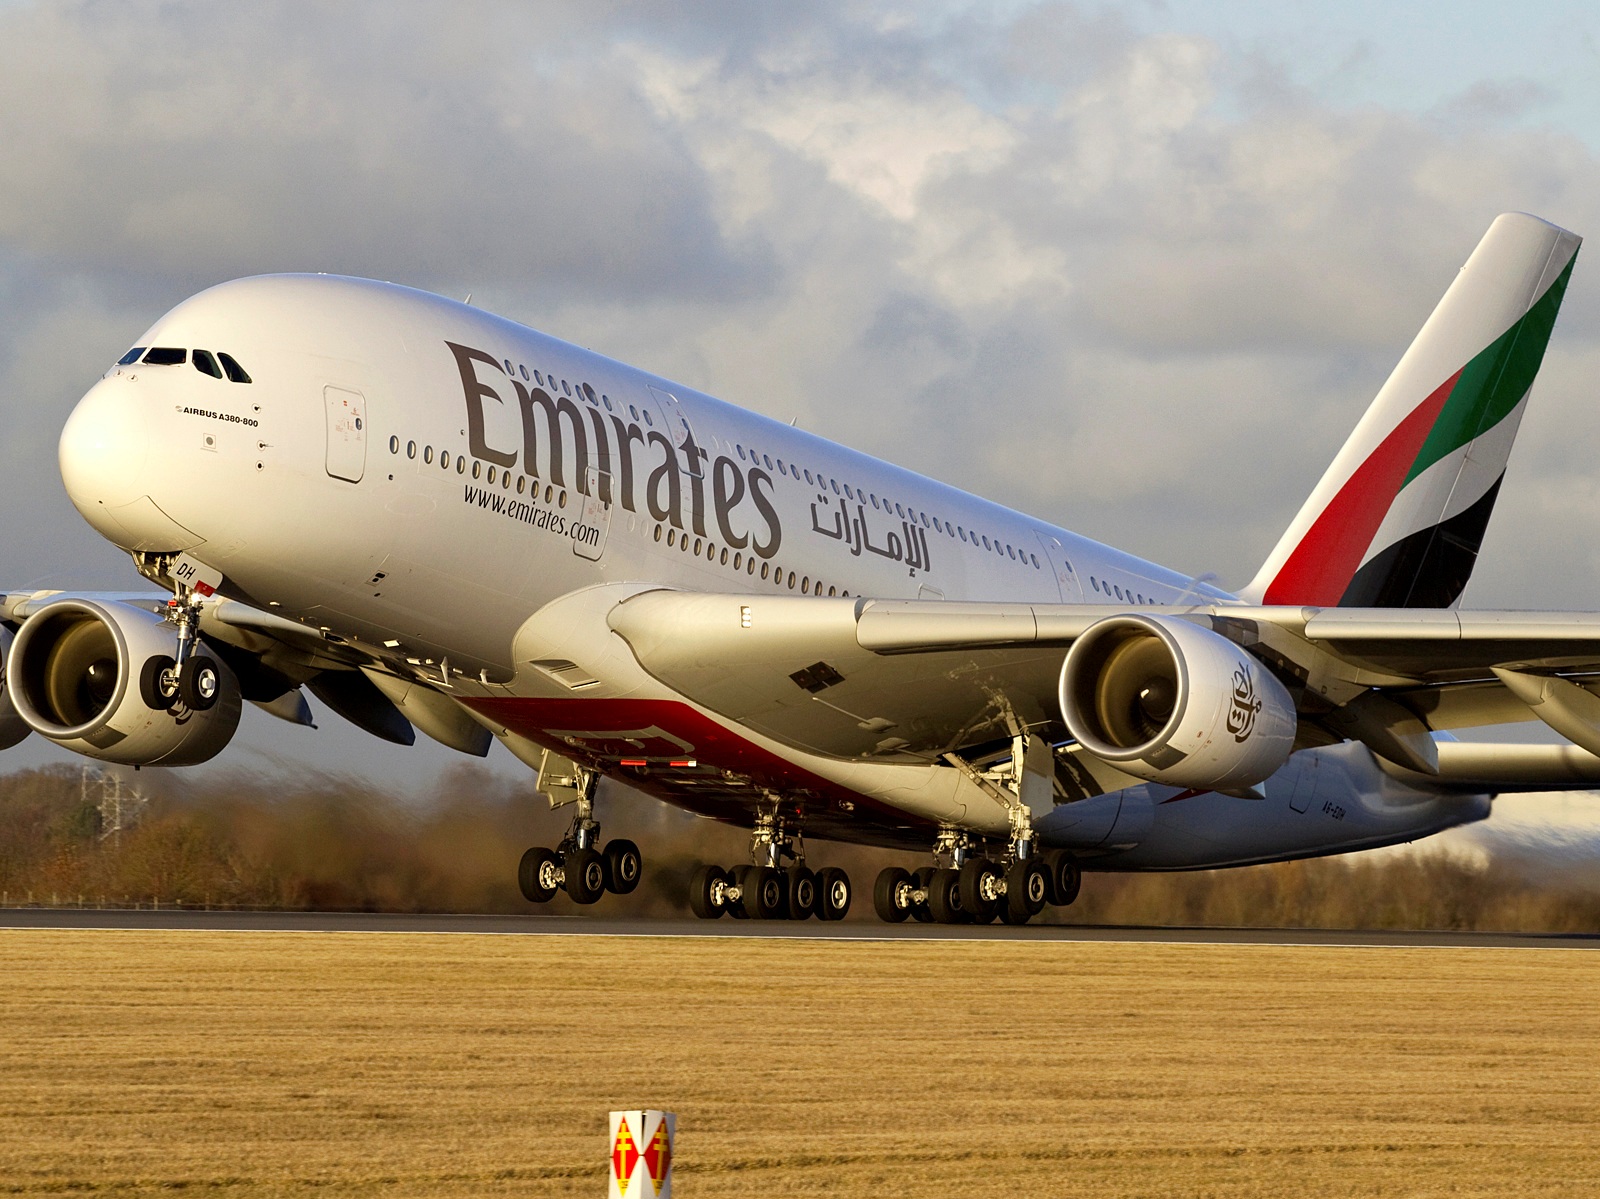 Transport aérien : Emirates augmente sa franchise de bagages gratuite sur son réseau en Afrique